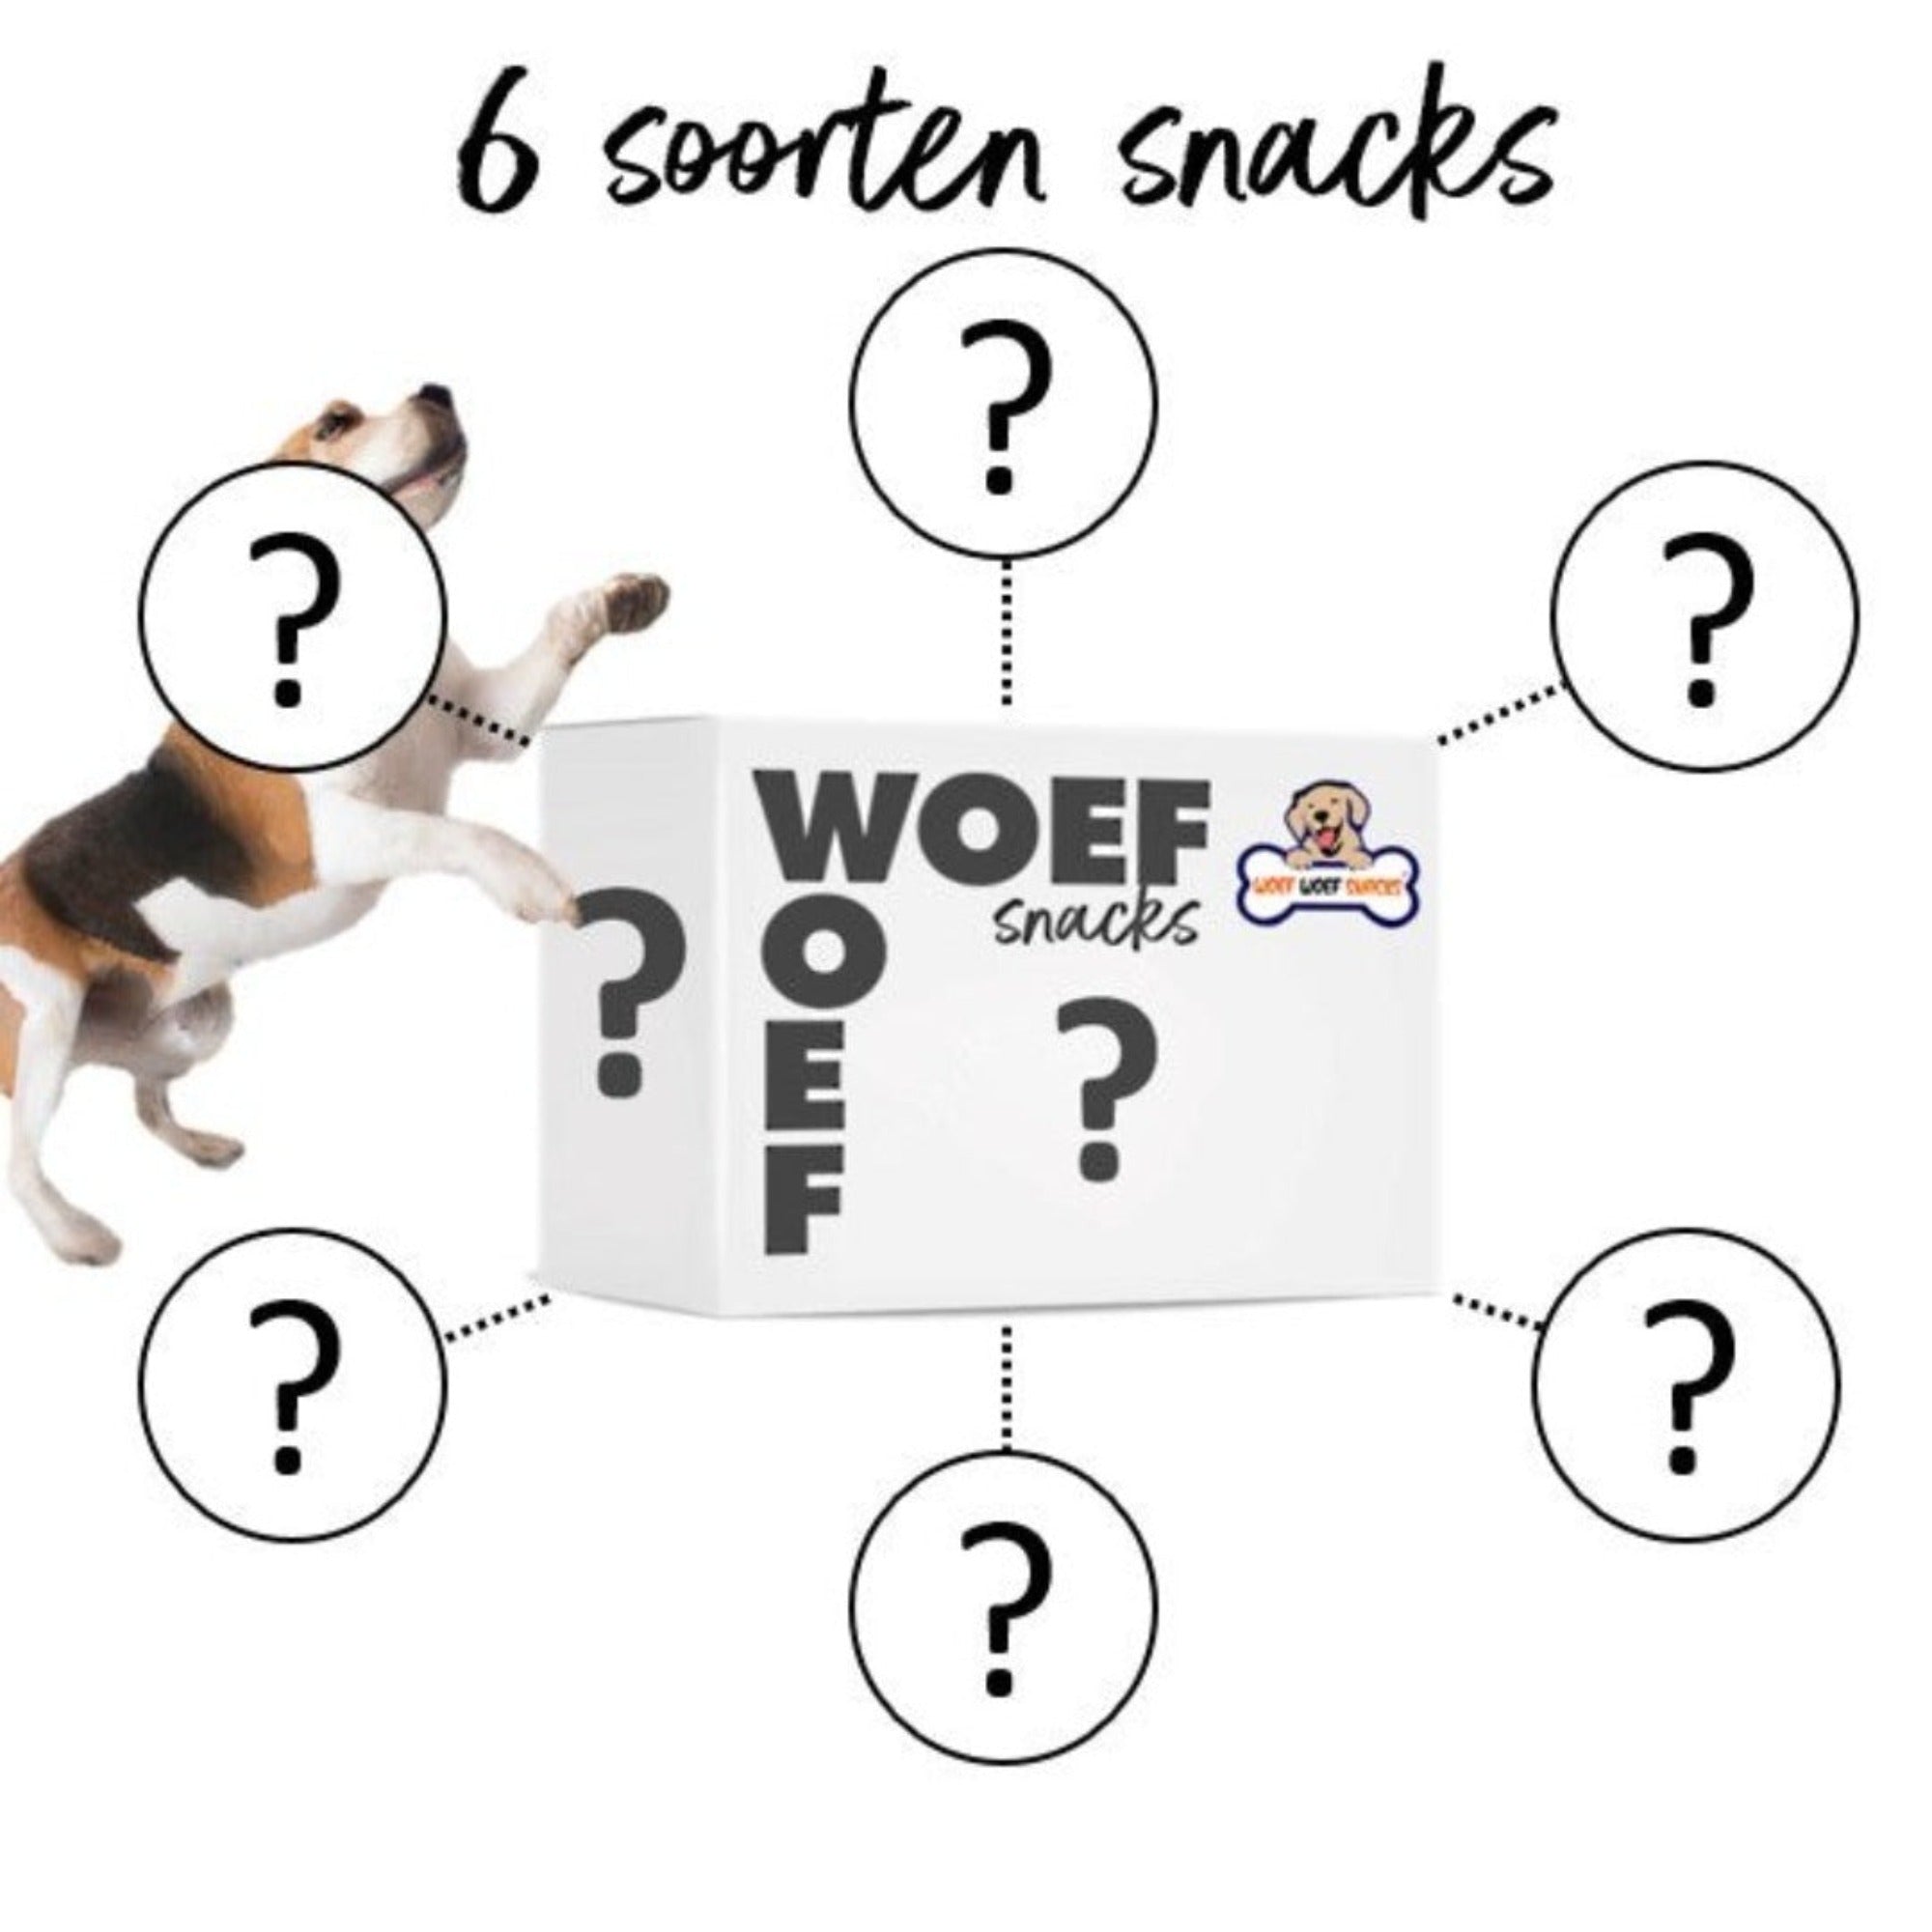 De snack box van Woef Woef Snacks met een blije beagle hond. Er staan 6 verschillende vraagtekens omheen omdat het een verrassing is welke snacks er in zitten.